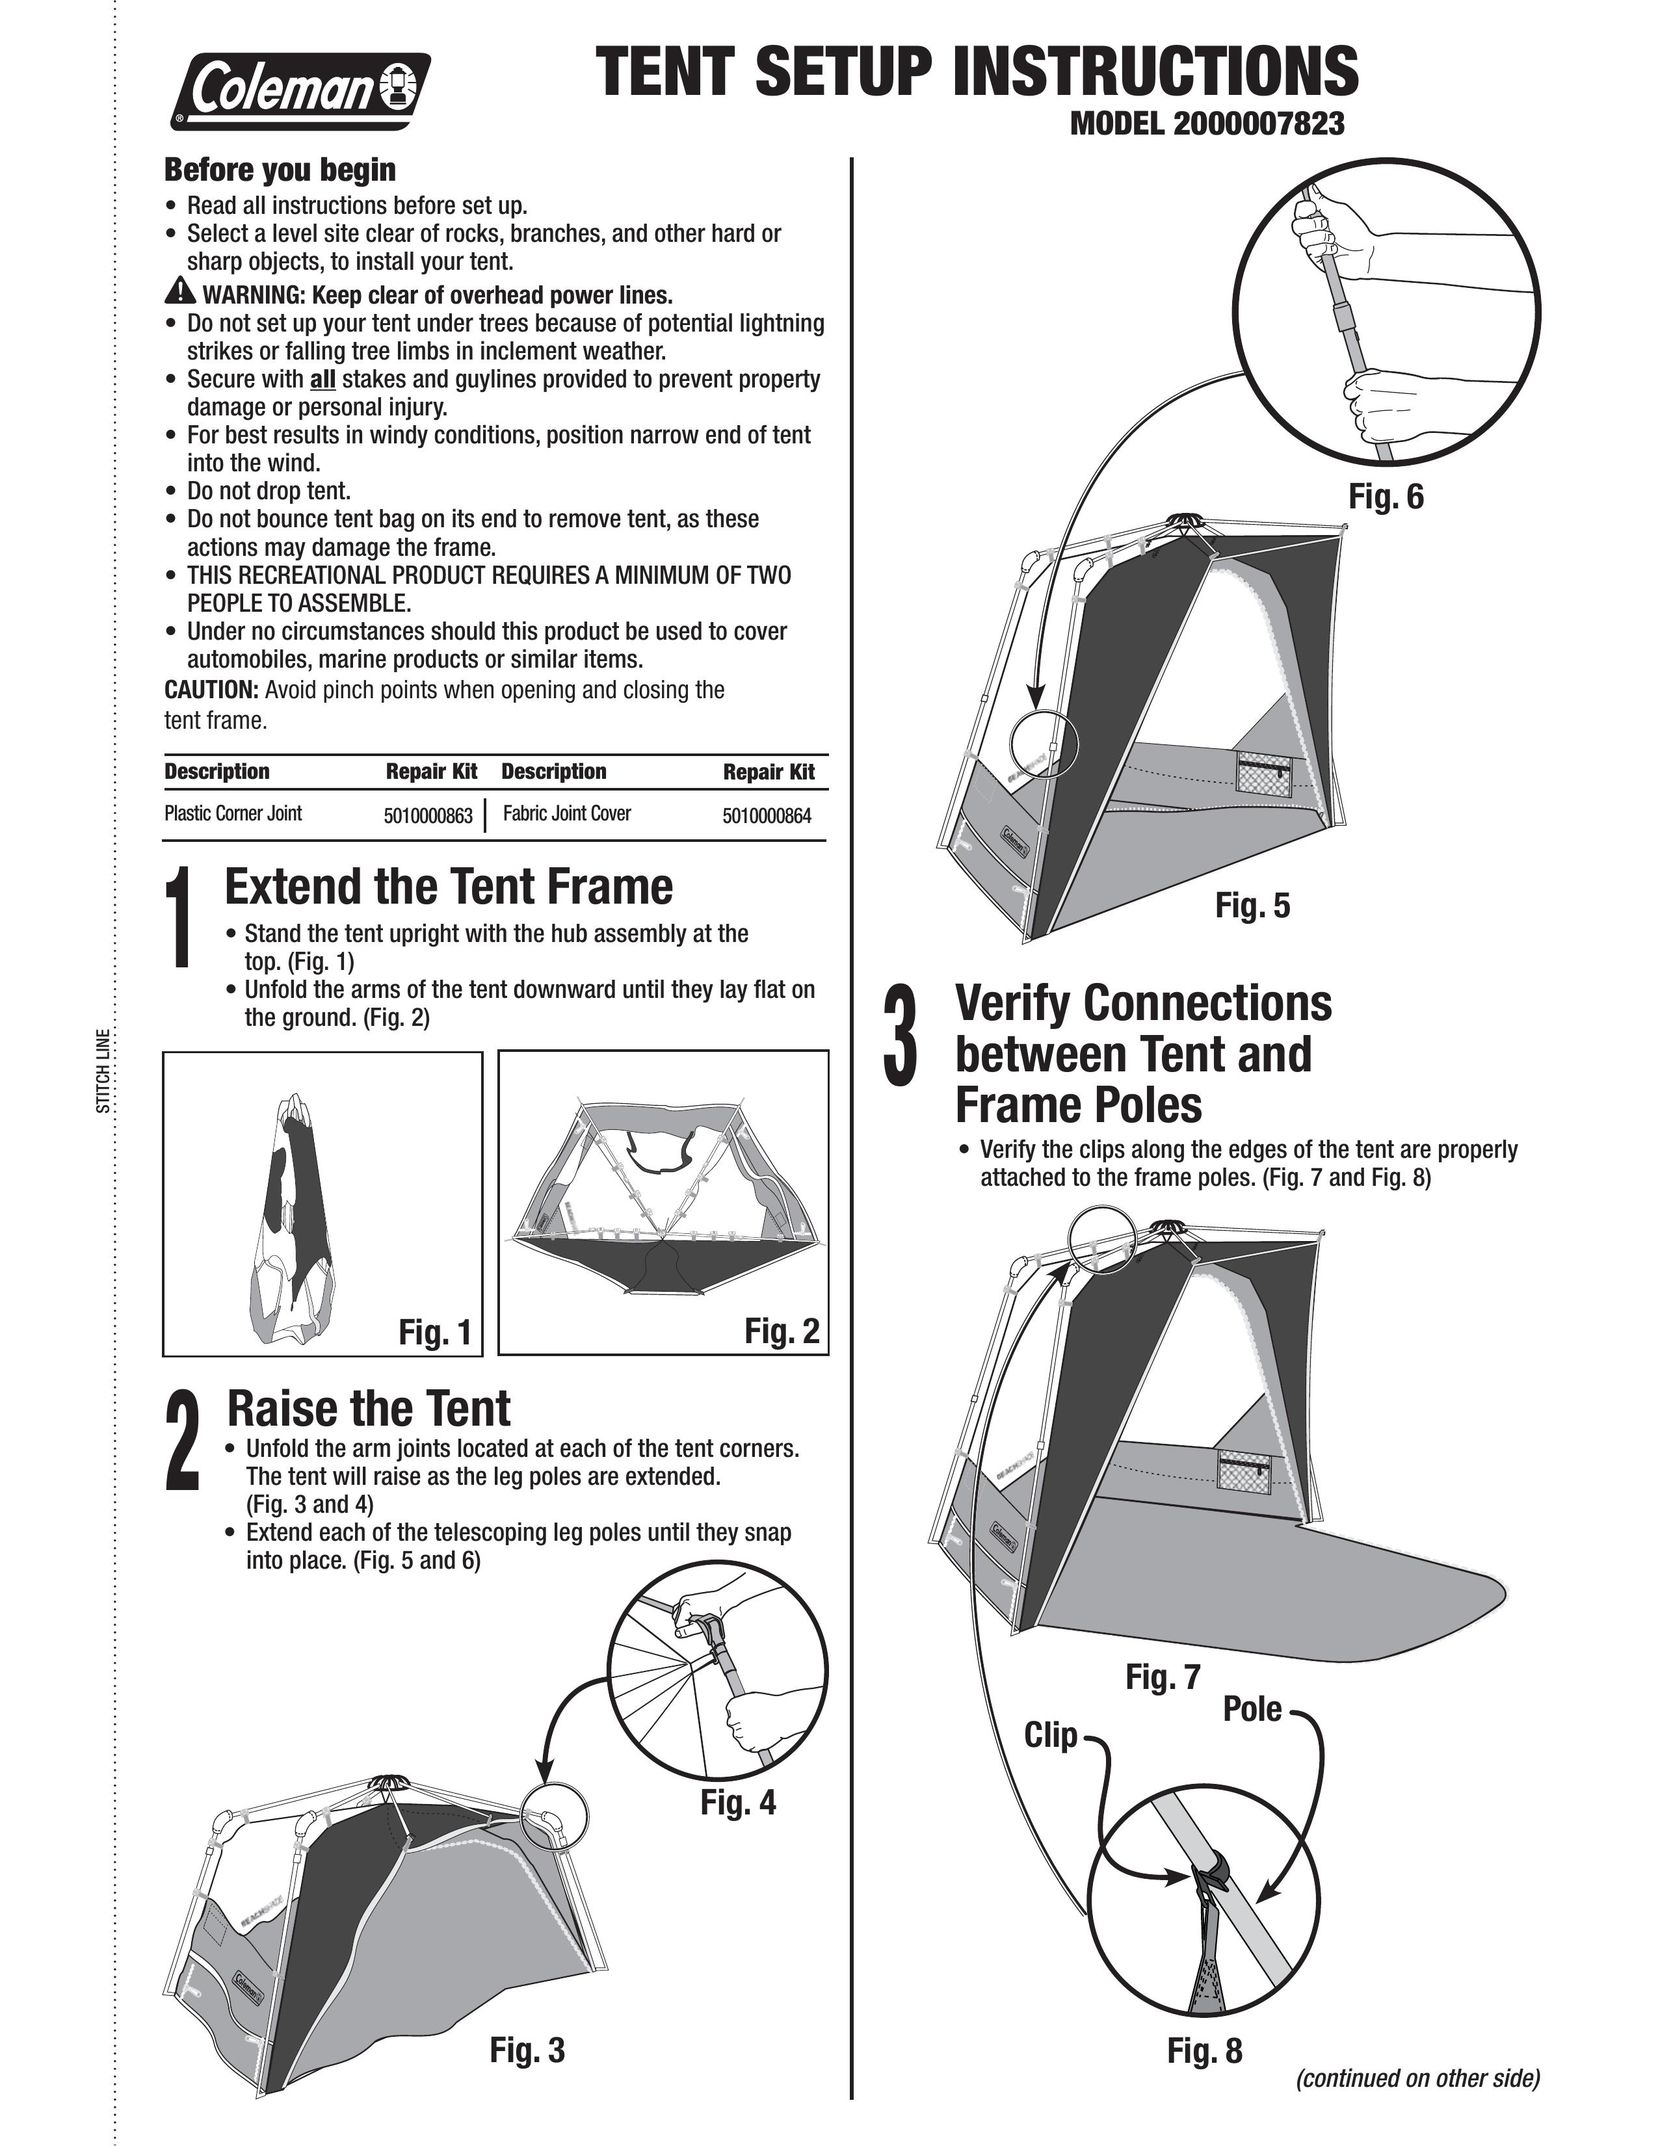 Coleman 2000007823 Tent User Manual